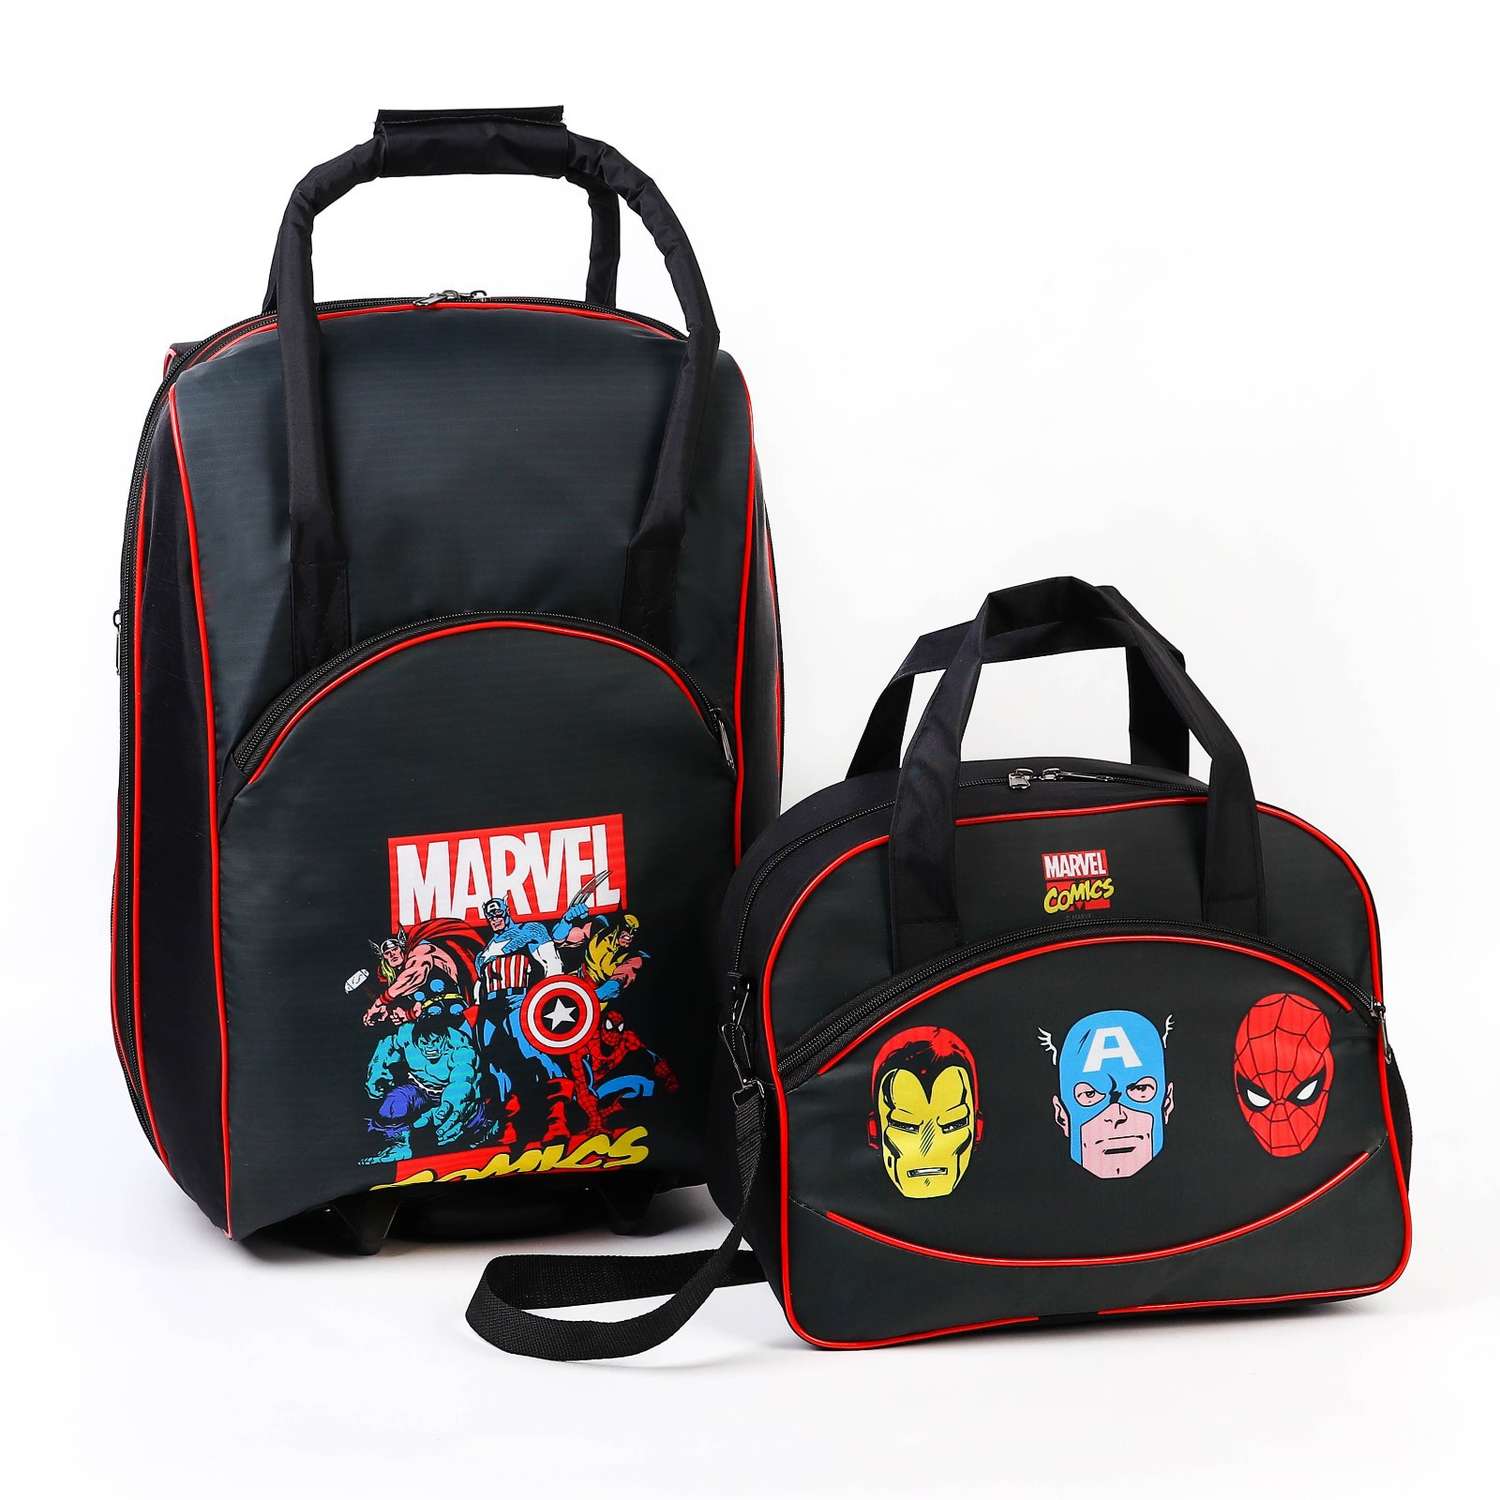 Чемодан Marvel с сумкой COMICS HEROES 52*21*34 см отдел на молнии н/карман 9728270 - фото 1